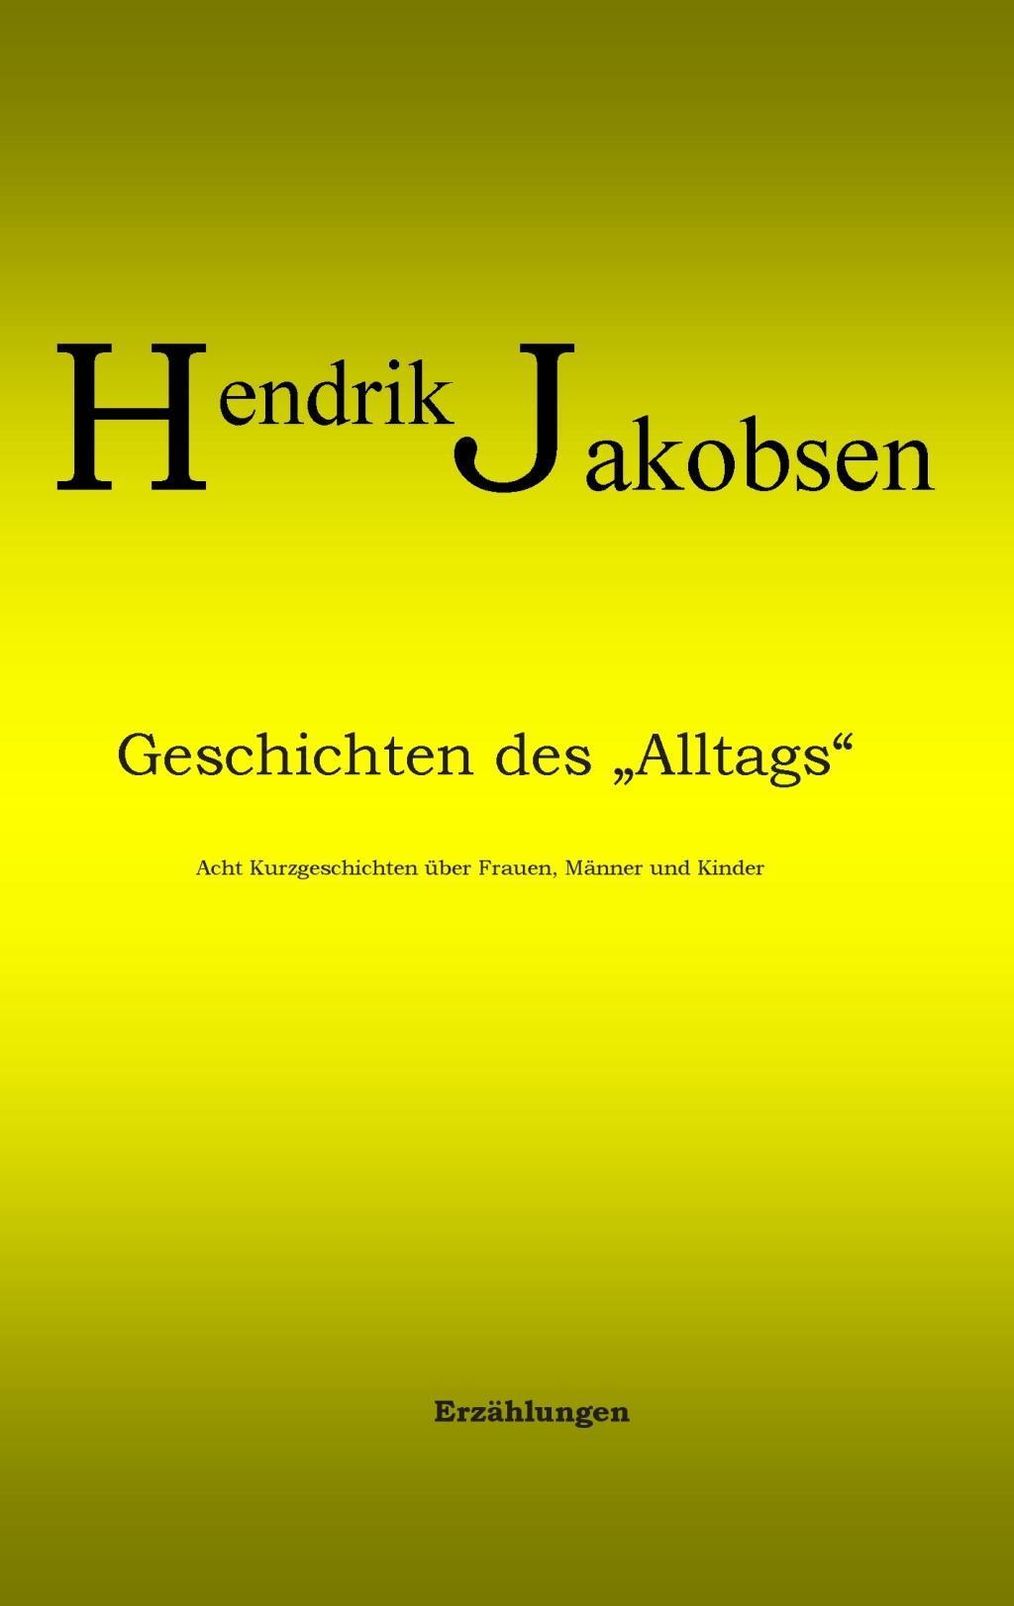 Geschichten des Alltags - 8 Kurzgeschichten über Männer, Frauen und Kinder  eBook v. Hendrik Jakobsen | Weltbild